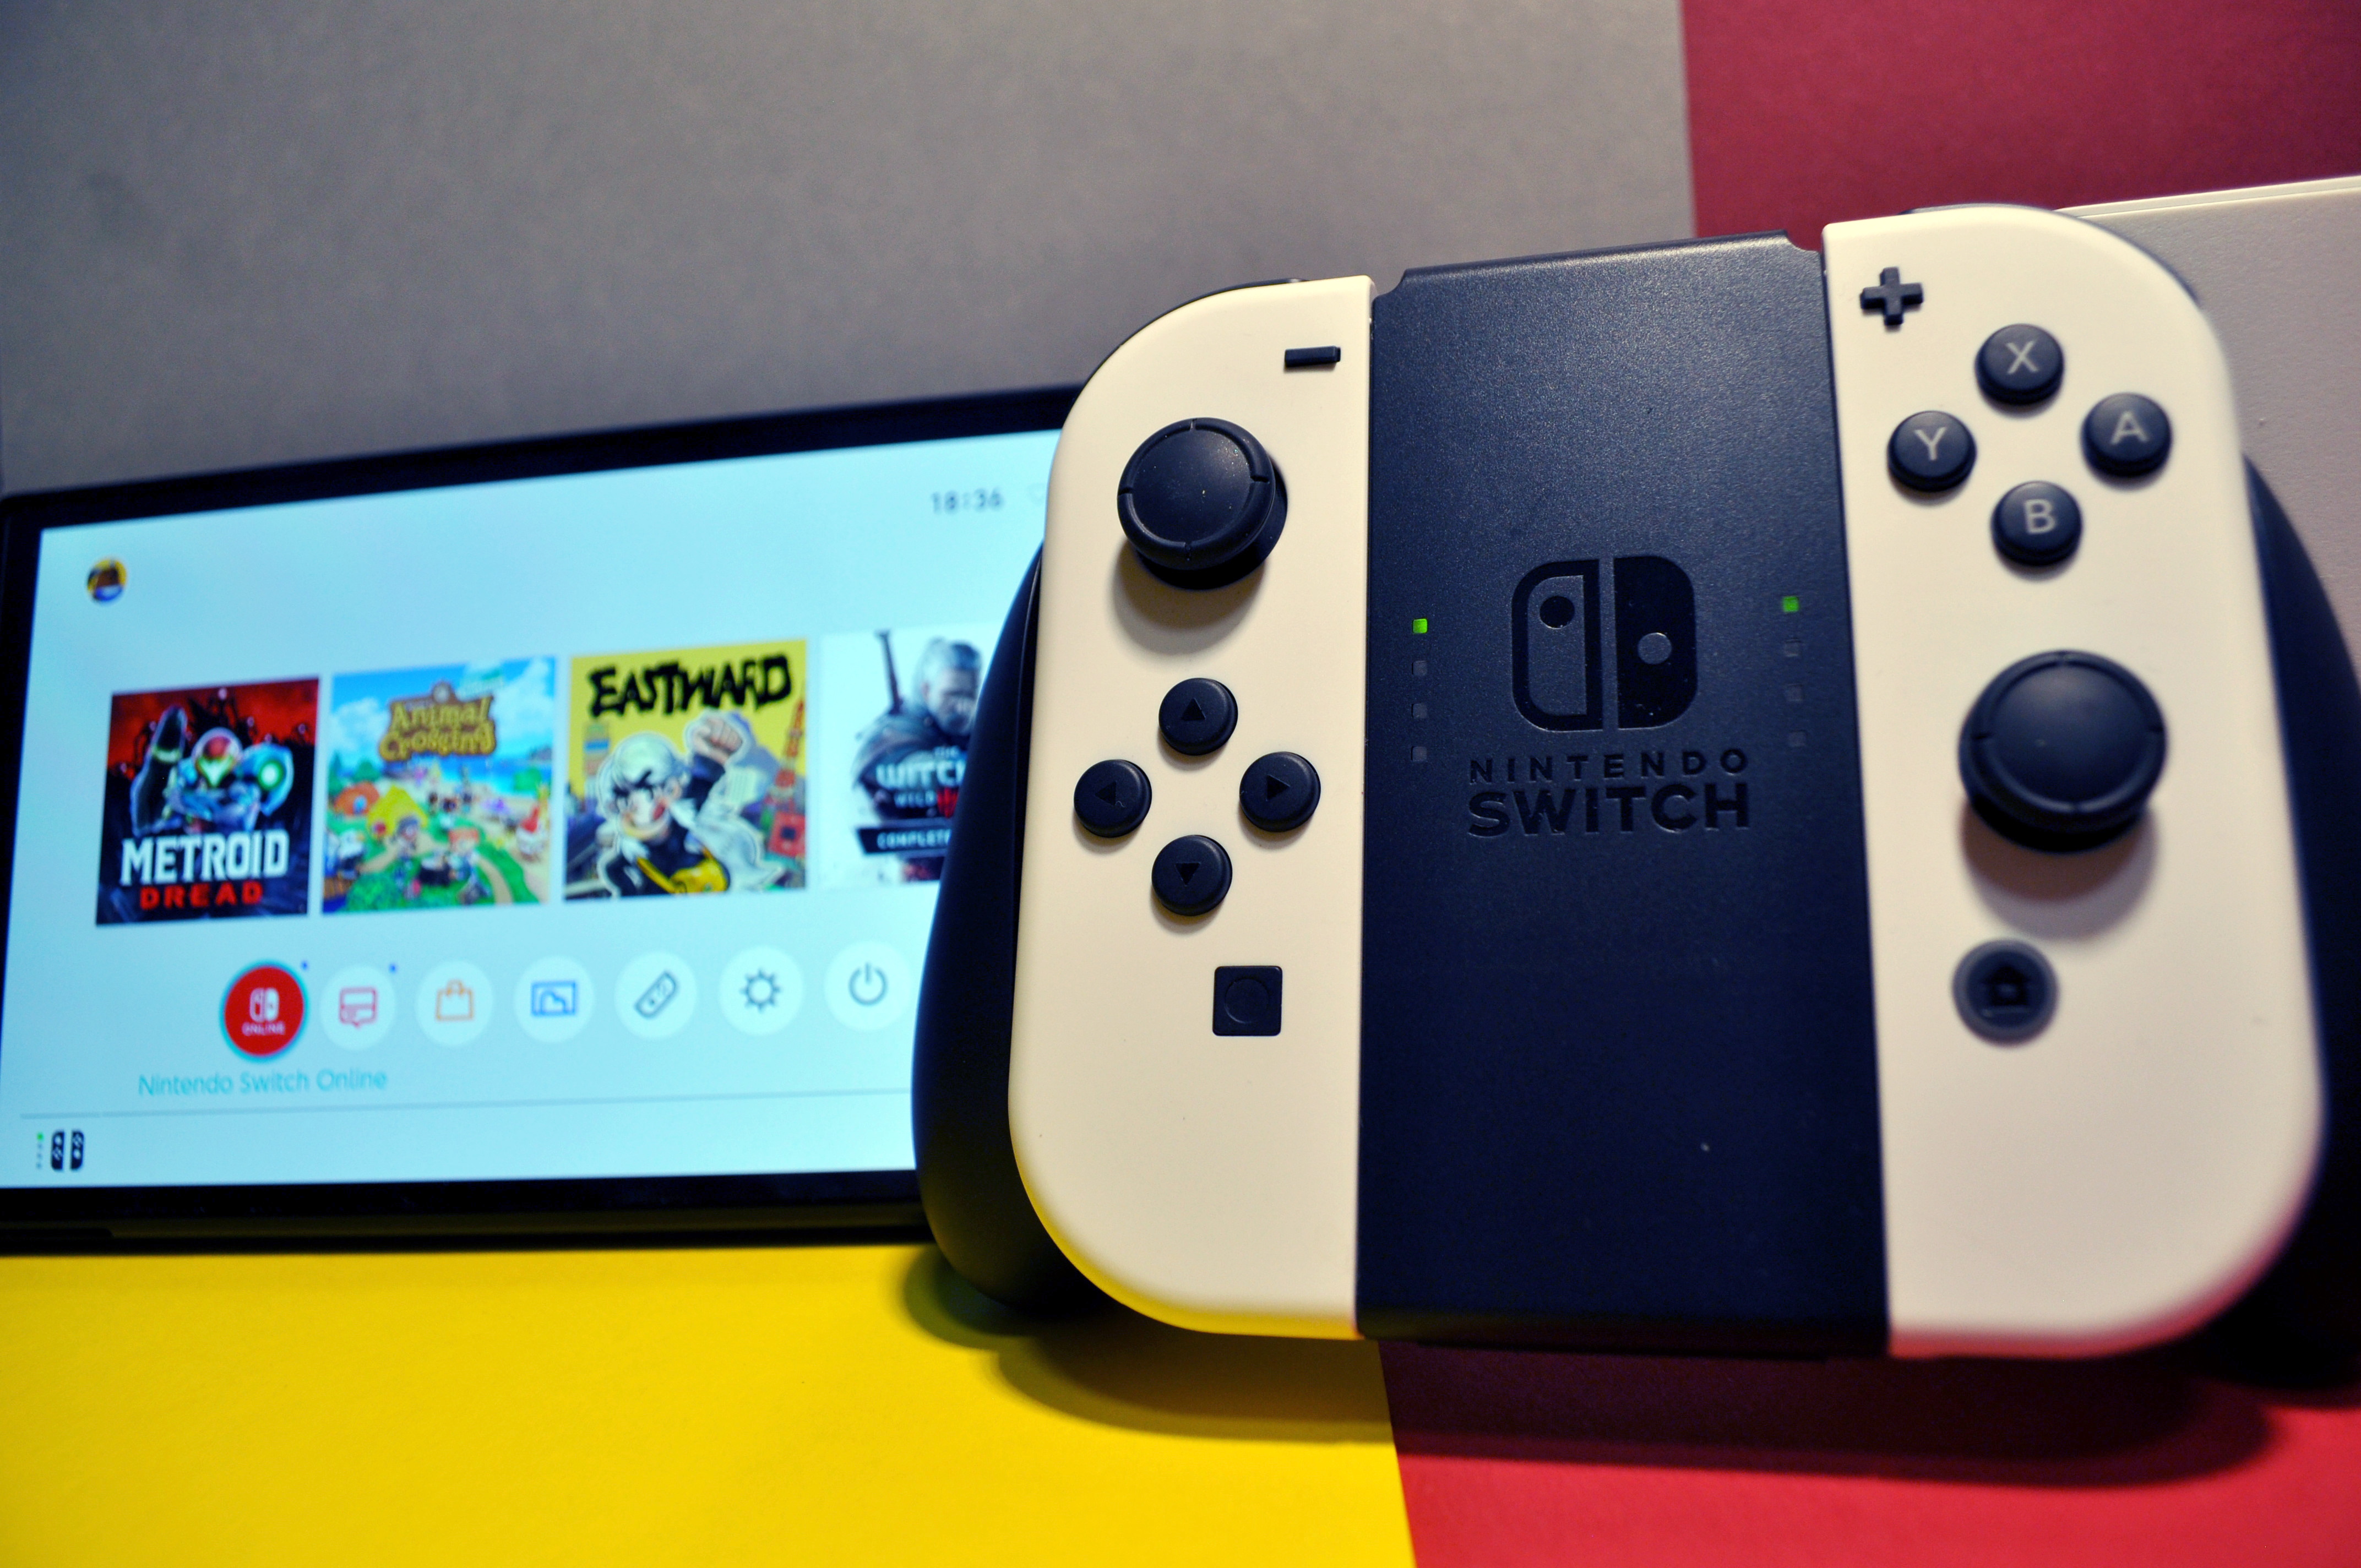 Nintendo Switch im OLED Neuauflage der Handheld-Konsole OLED-Display Test: TechStage | mit